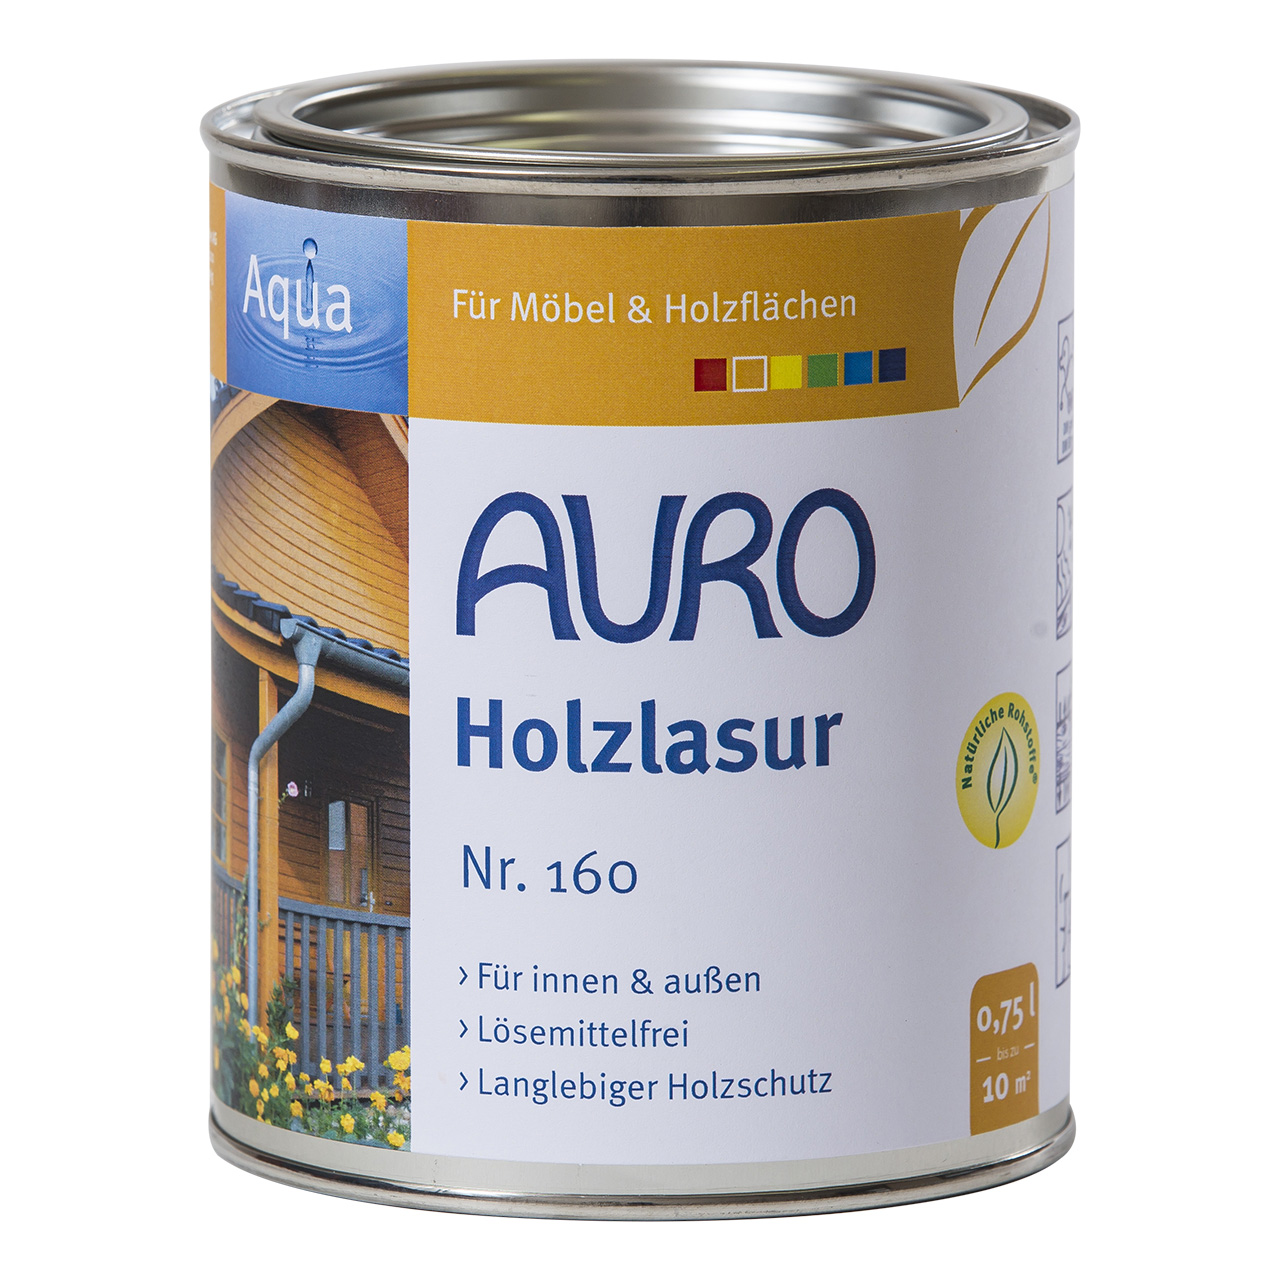 Auro Holzlasur Nr. 160 azurblau, 750ml